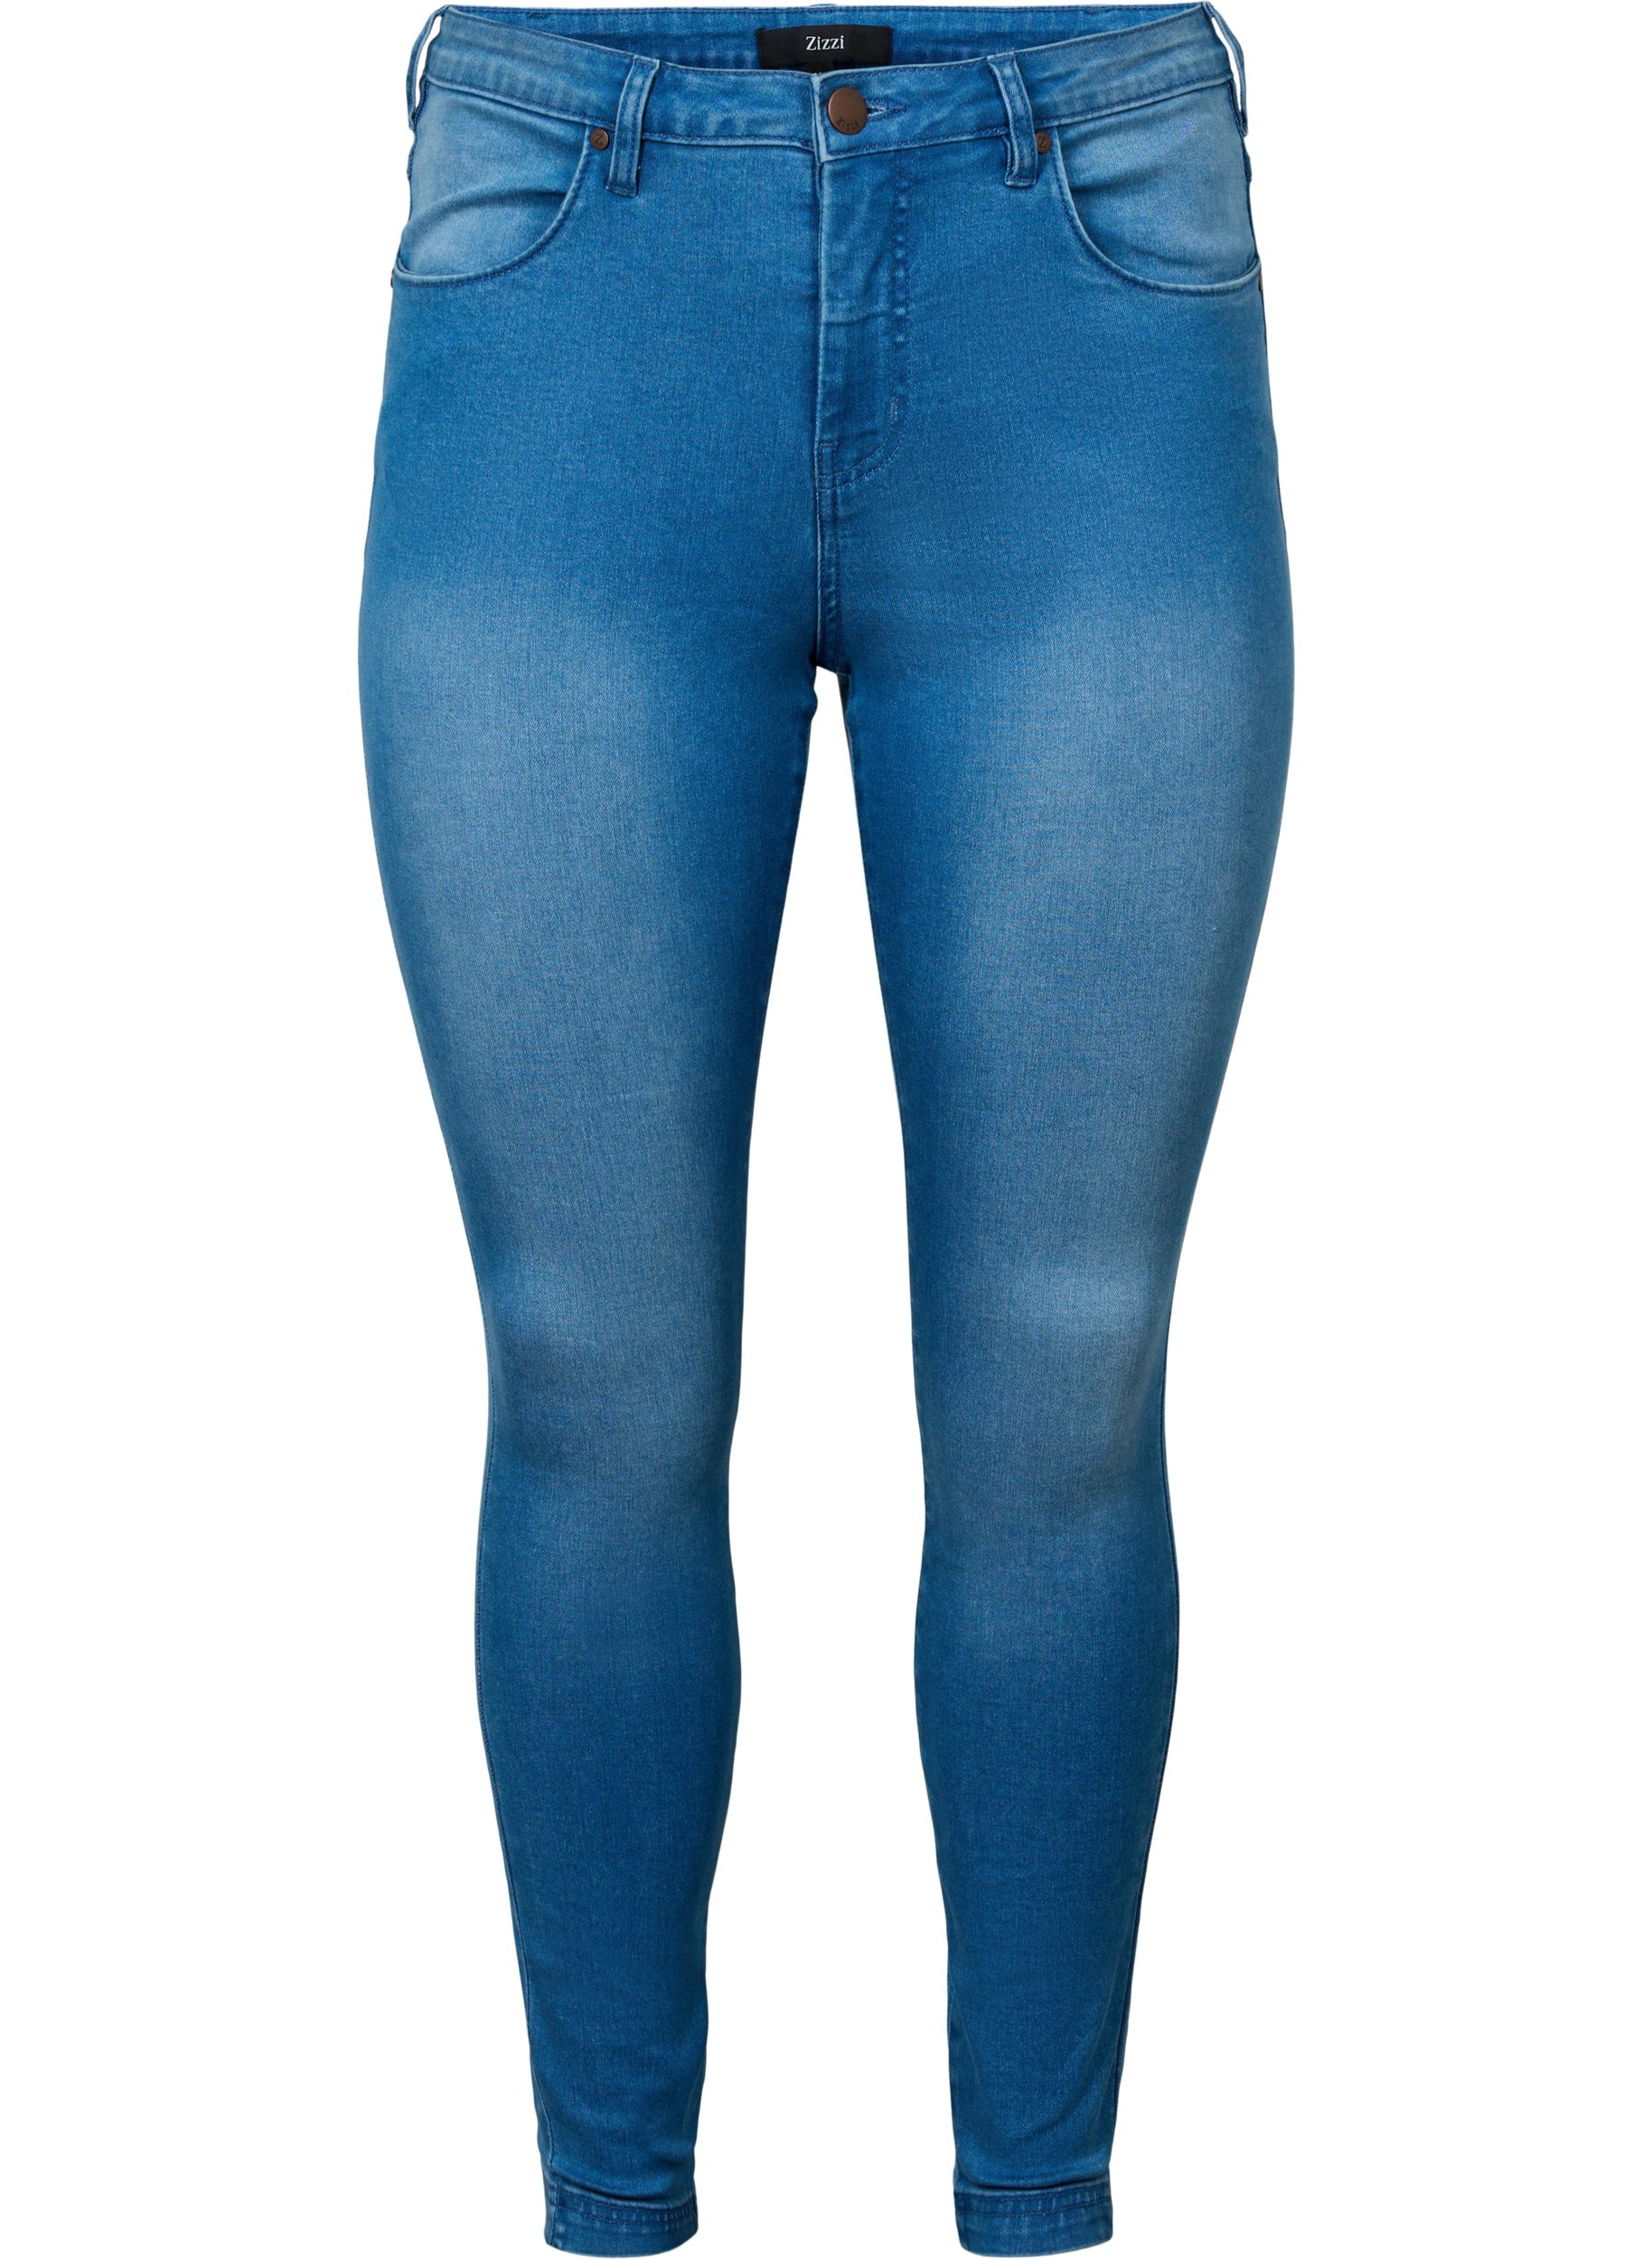 Super Slim Amy Jeans mit hoher Taille, Lt blue Denim